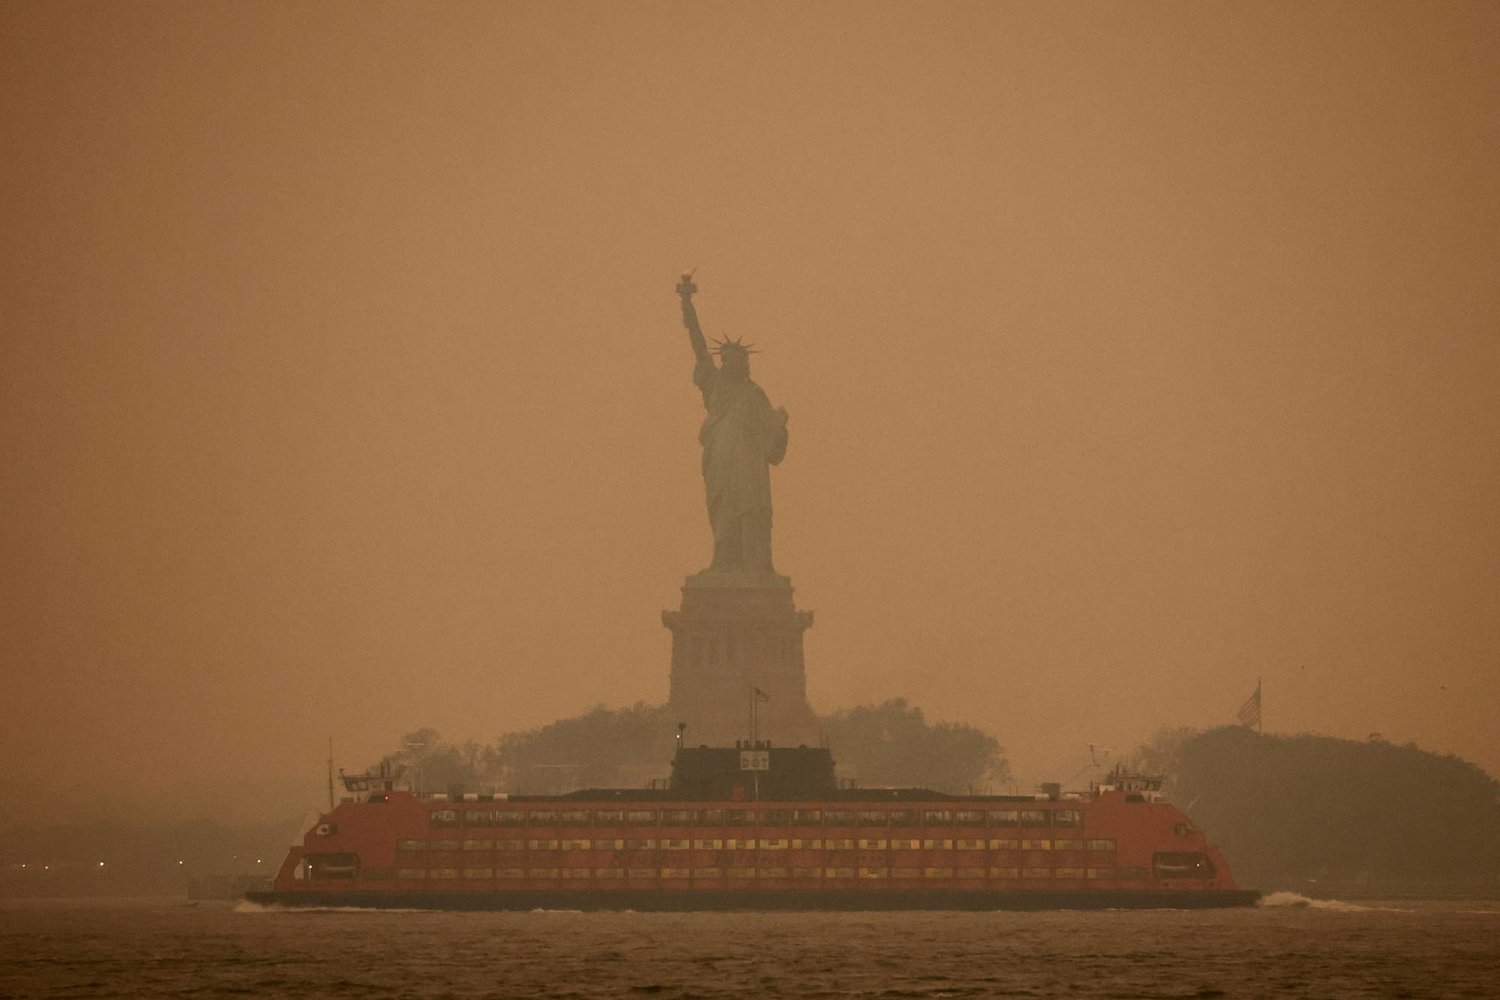 حرائق الغابات في كندا تخنق أكبر مدن العالم "نيويورك".